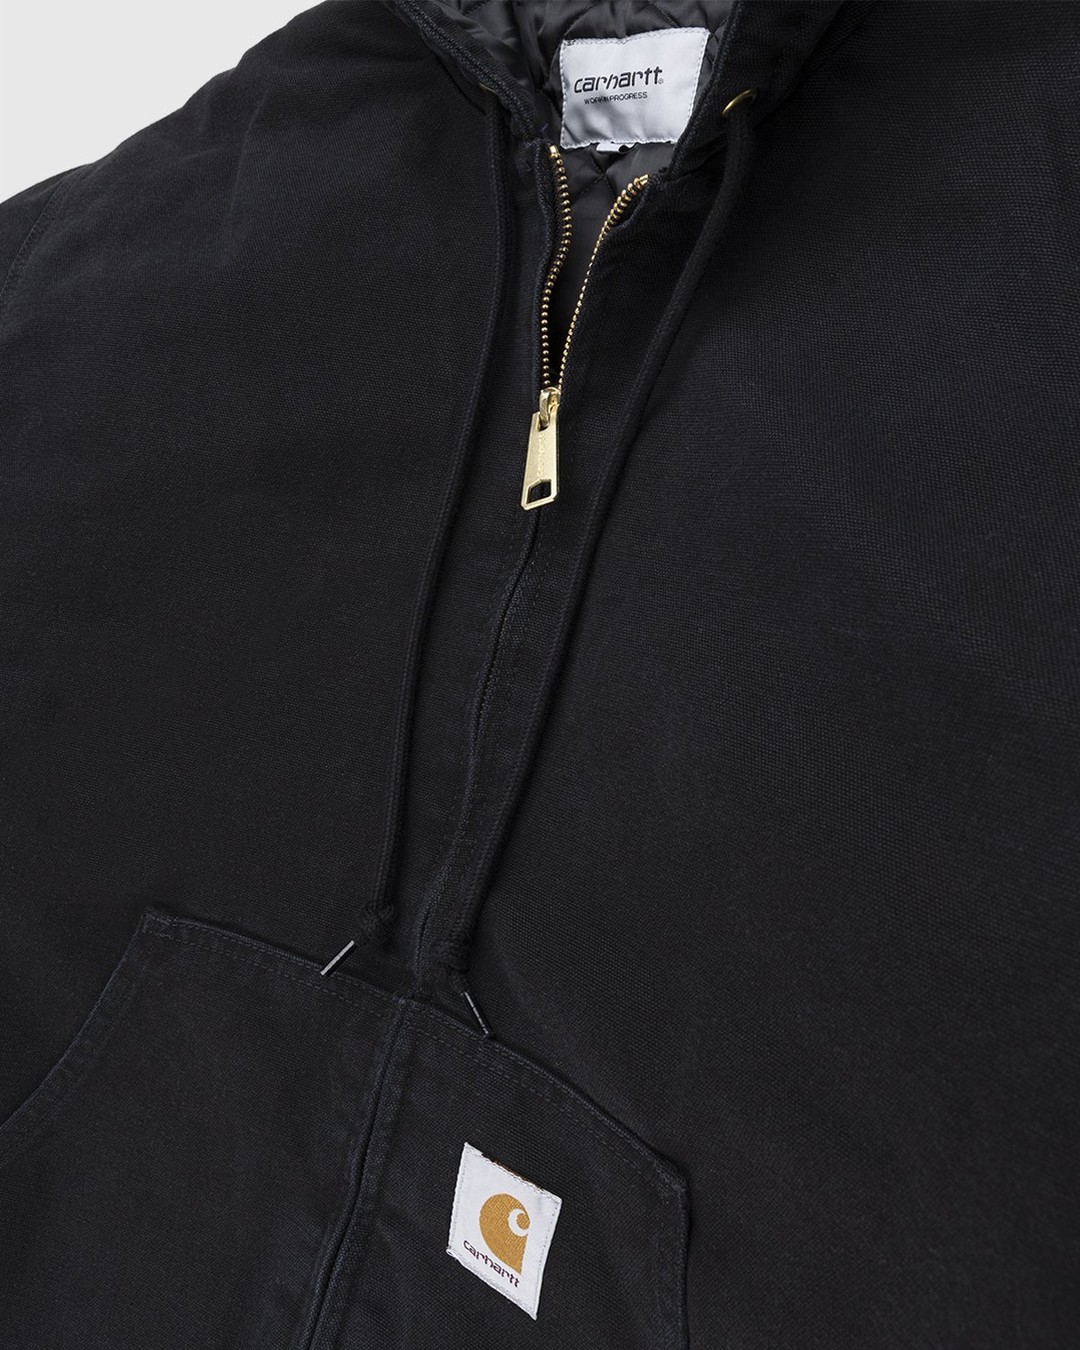 Carhartt WIP – OG Active Jacket Black - Jackets - Black - Image 4